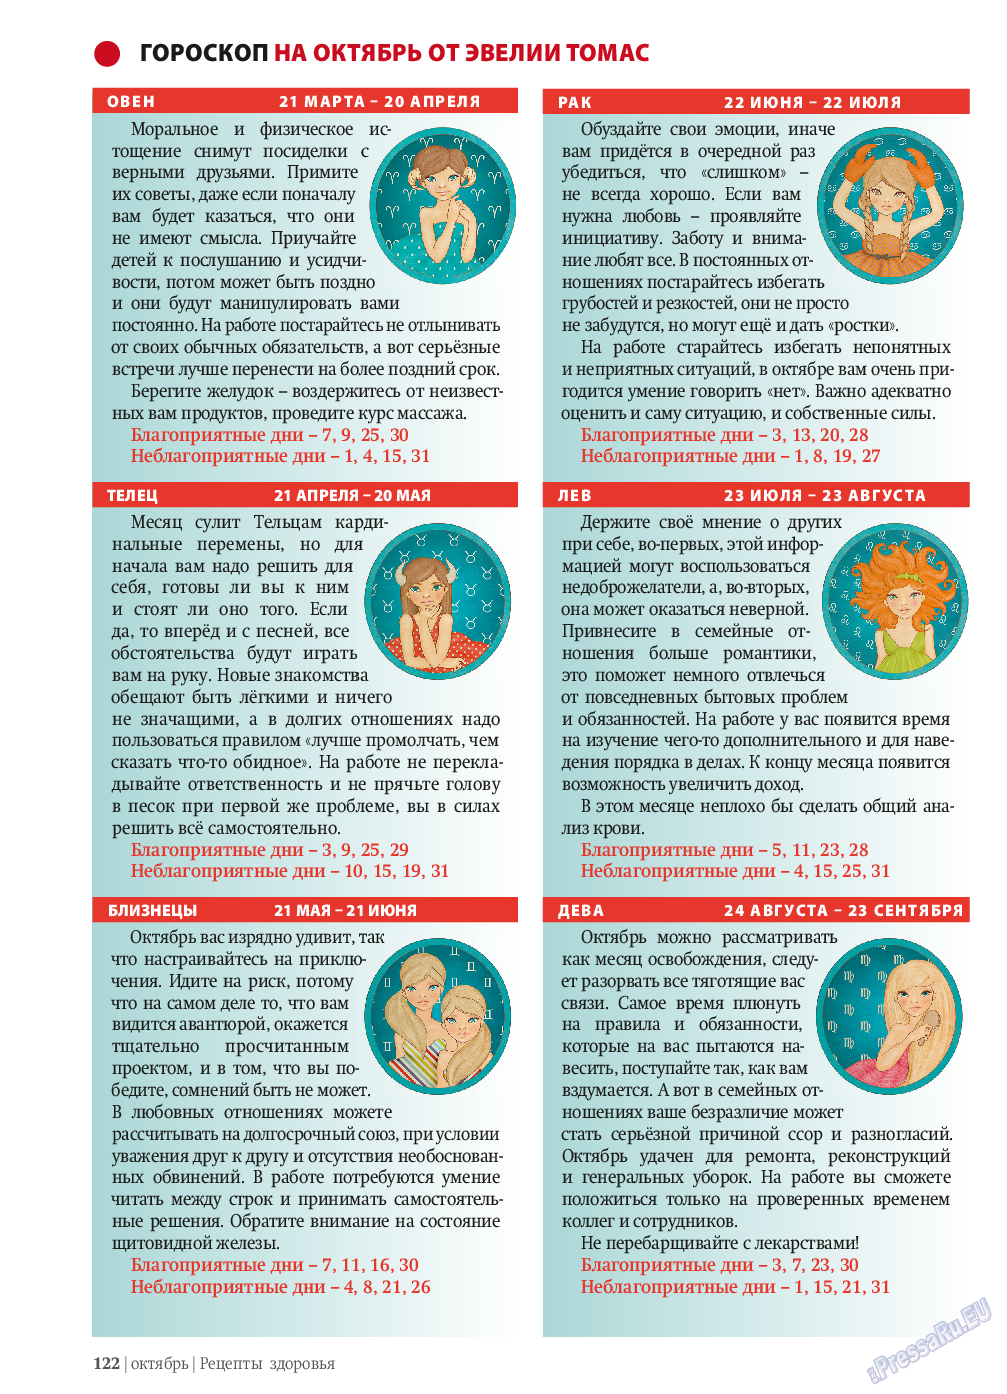 Рецепты здоровья, журнал. 2013 №10 стр.122